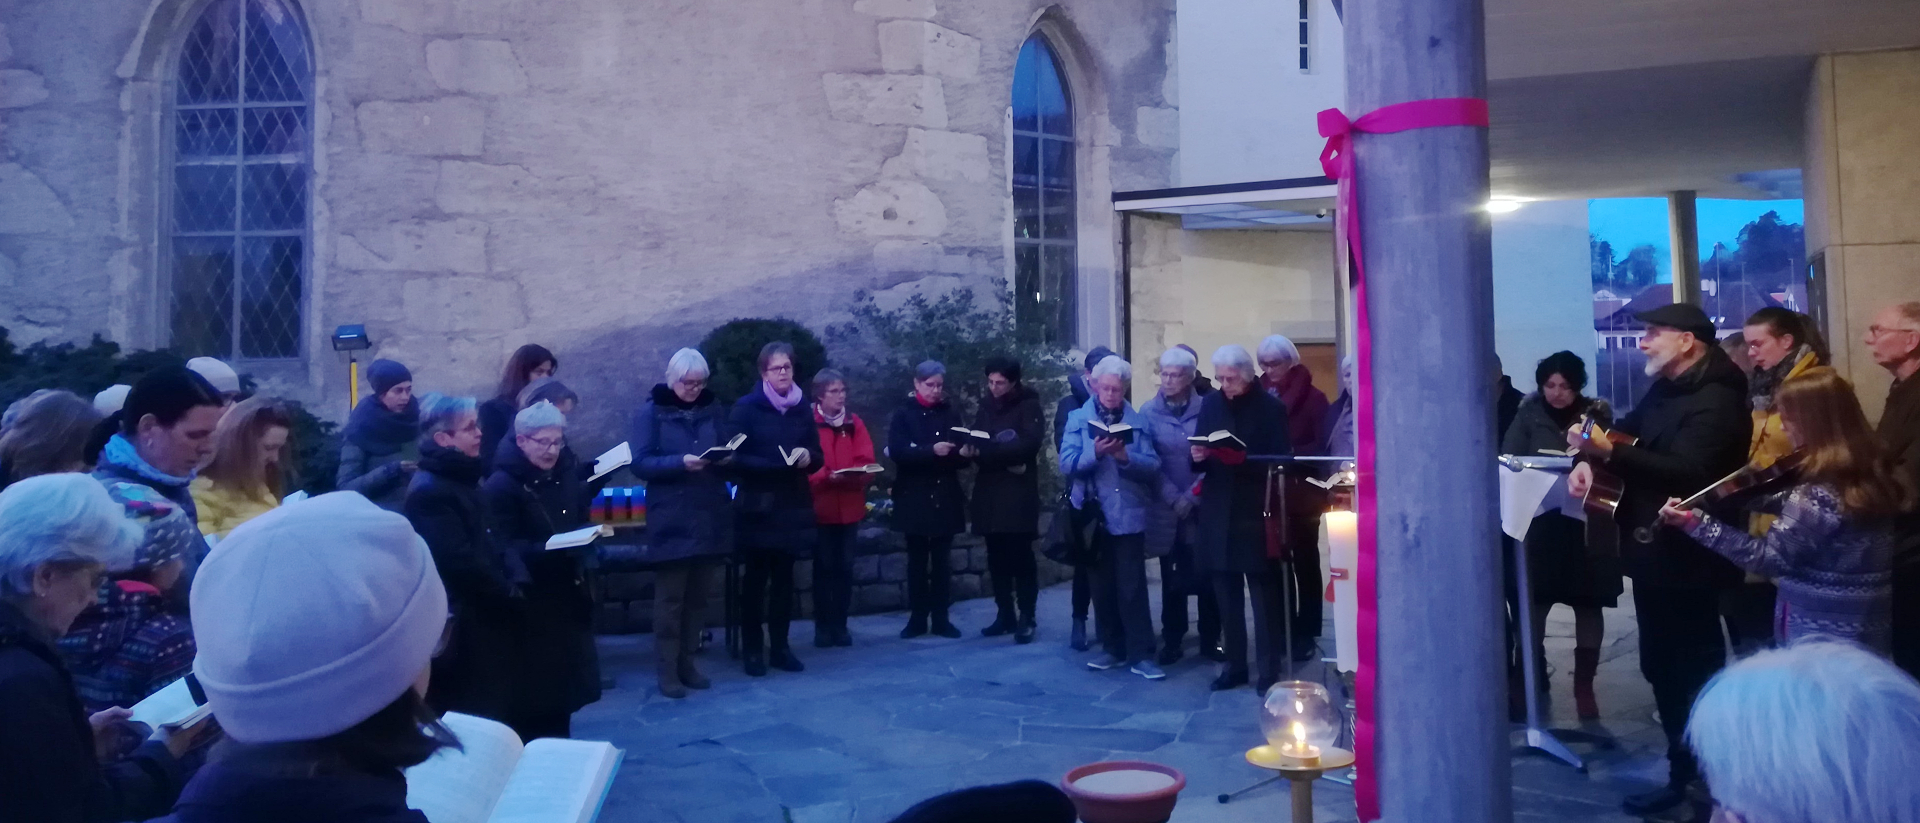 Gläubige feierten in Würenlos AG am 22. Februar 2020 einen Gottesdienst vor der Kirchentüre.